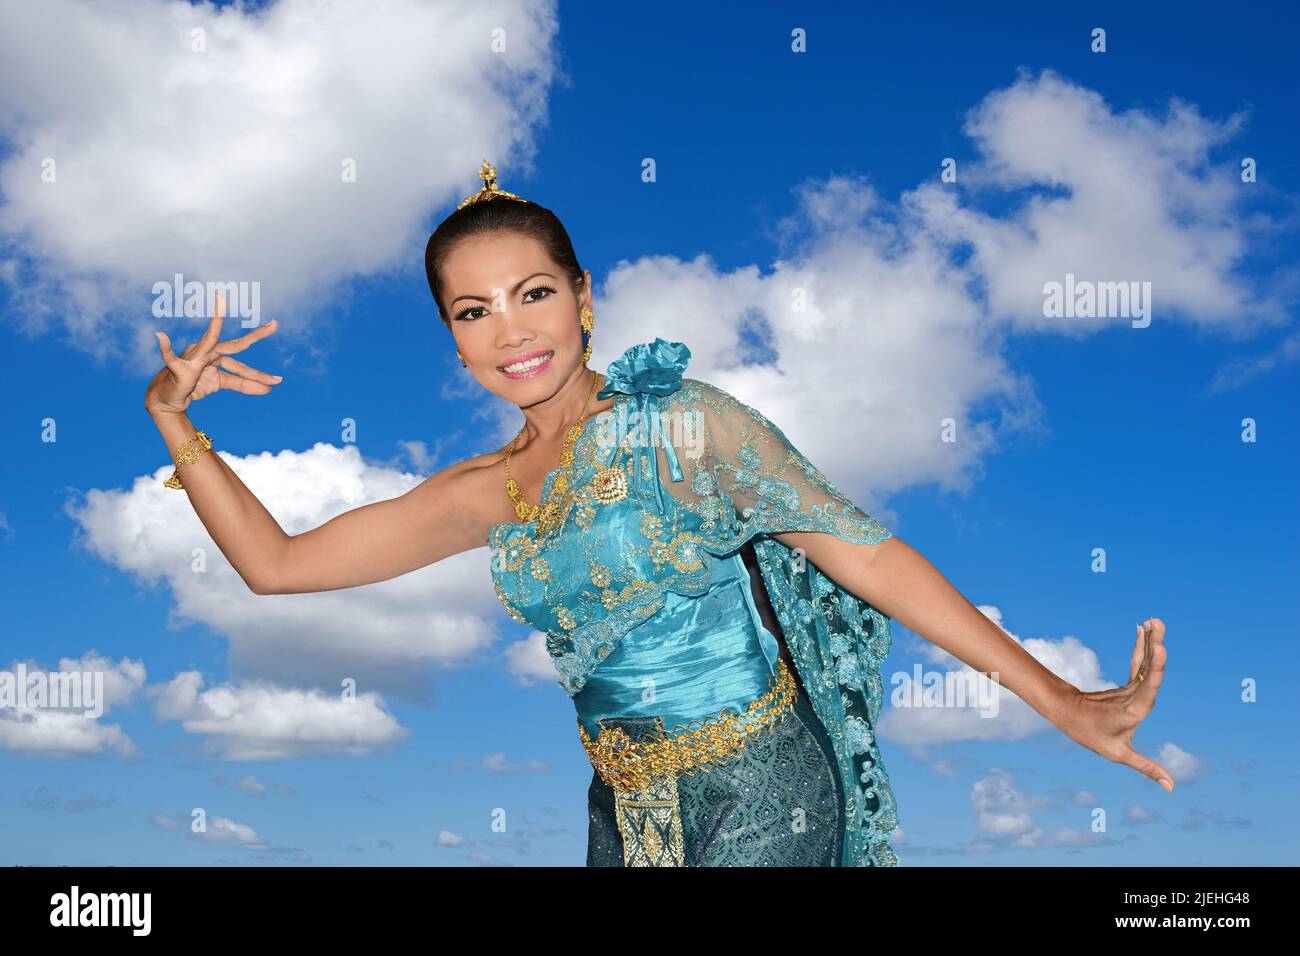 Thailändische Tänzerin tanzt, Folklore, Kostum, 35, Jahre, Frau, Frauen, Thai-Tanz, Tradition, Sommer, blauer Himmel, Cumuluswolken, Kostüm, Nina, Foto Stock